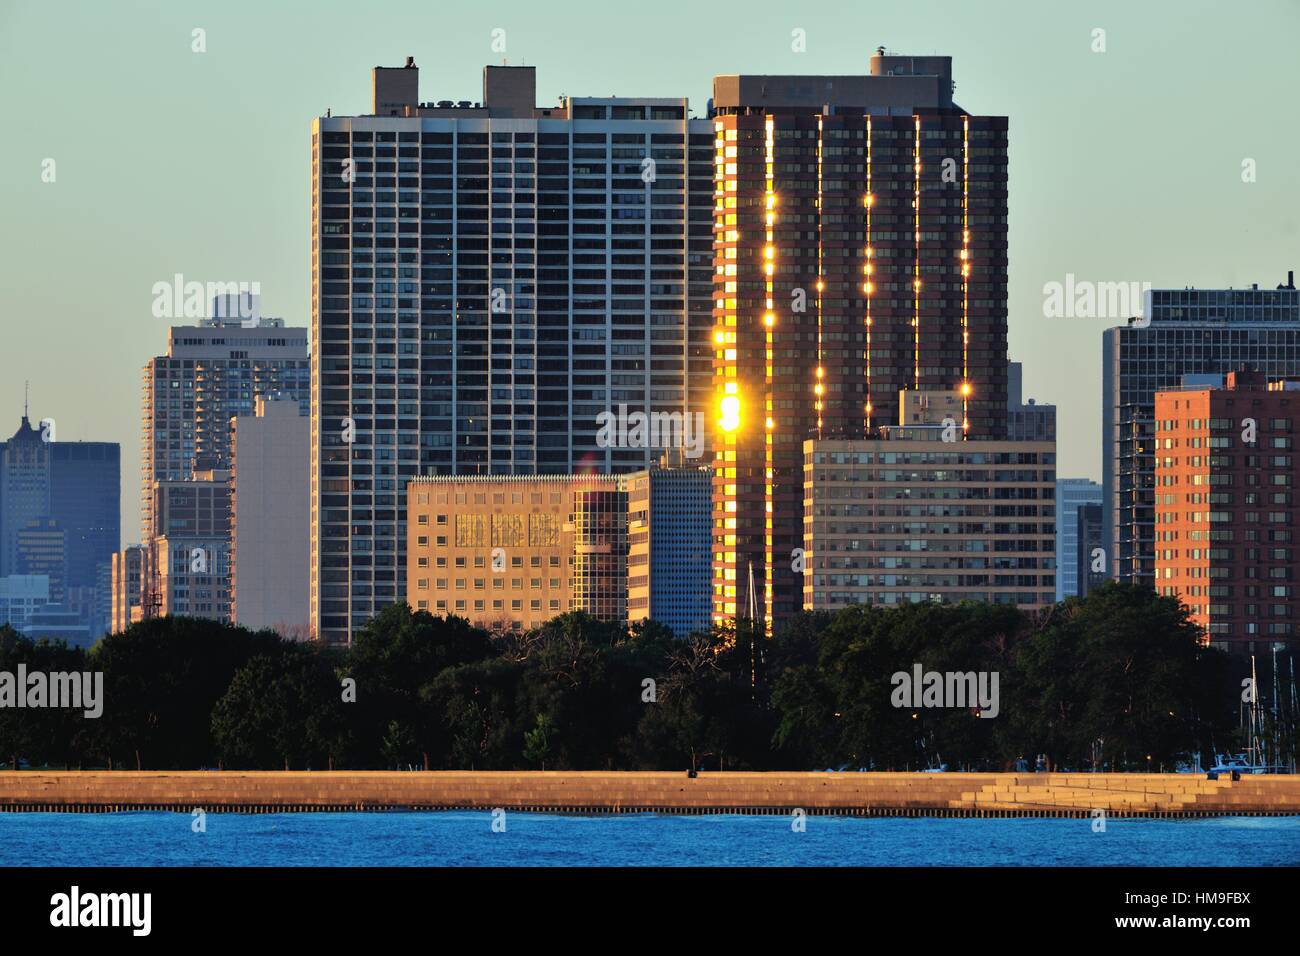 Le soleil reflète sur windows et d'un balcon sur une des tours d'habitation en copropriété avec vue sur le port de Montrose et le lac Michigan. Chicago, Illinois, USA. Banque D'Images